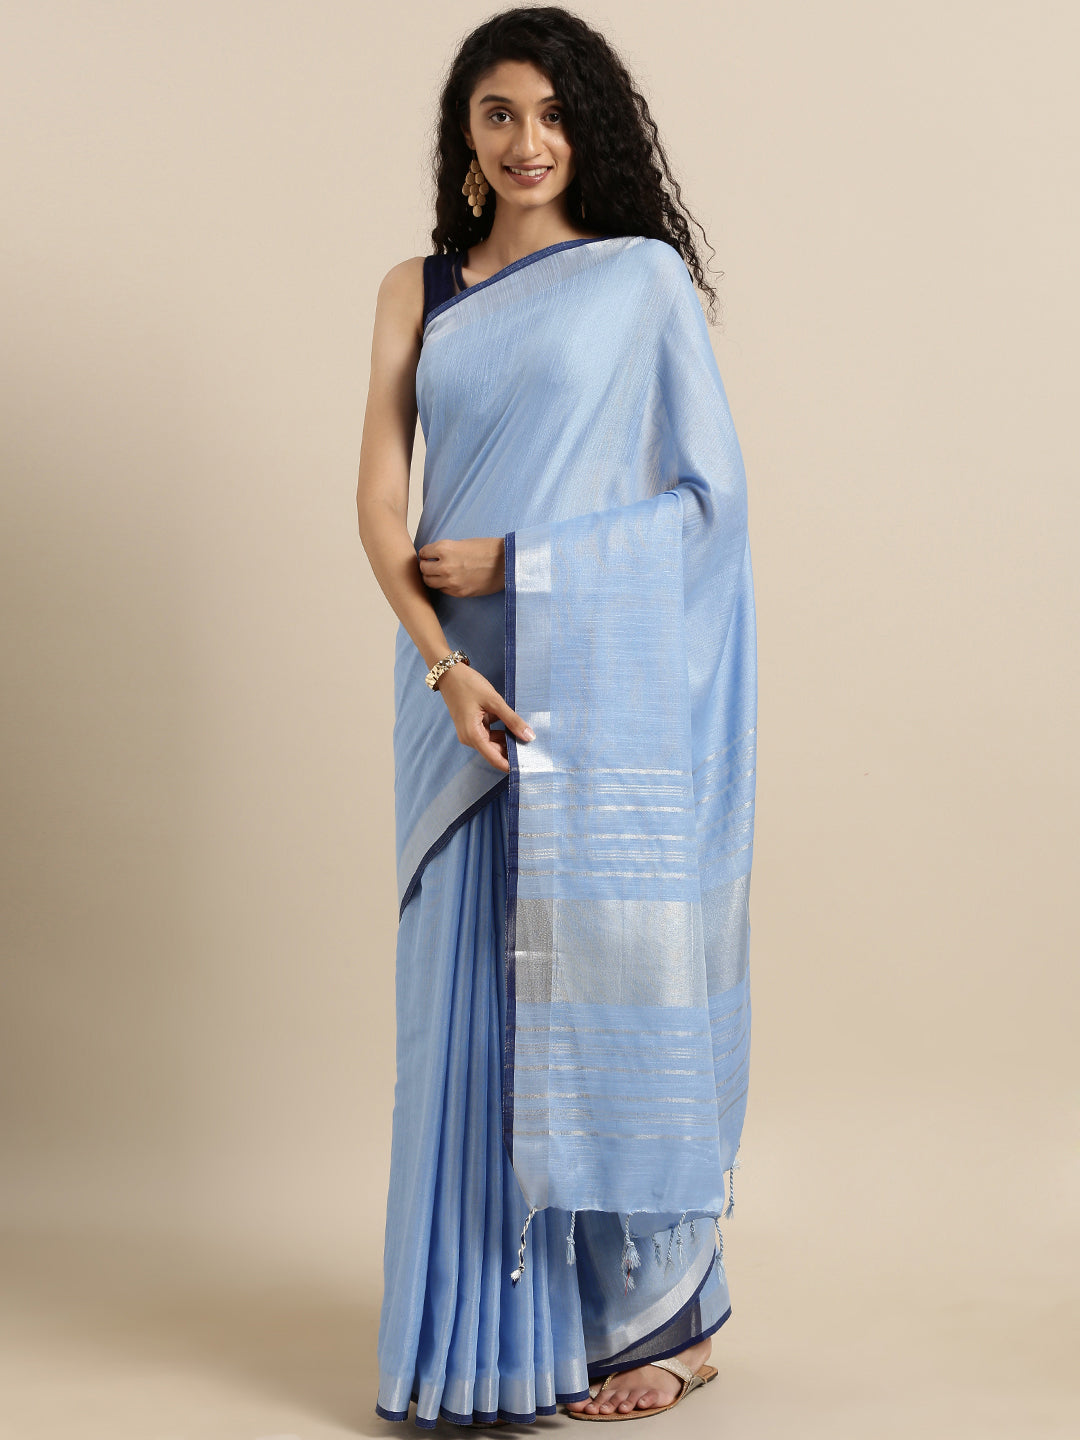 Blue Colour Stylish Solid Linen Saree With Zari Border